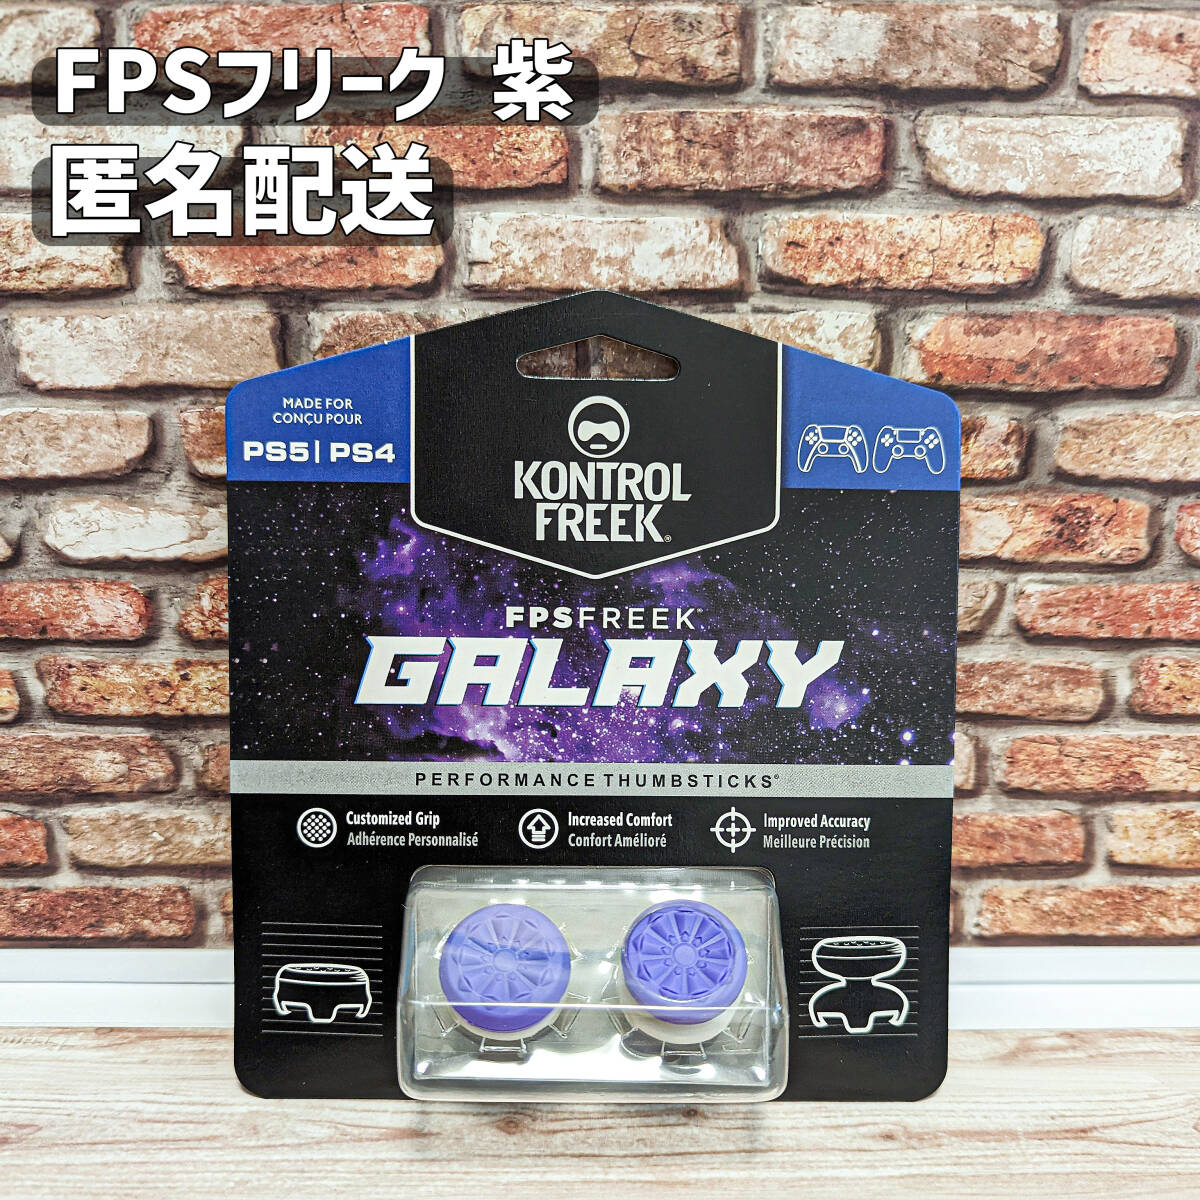 FPS フリーク エイムアシスト 紫 PS4 PS5 エイムキャップ Galaxy 匿名配送 の画像1